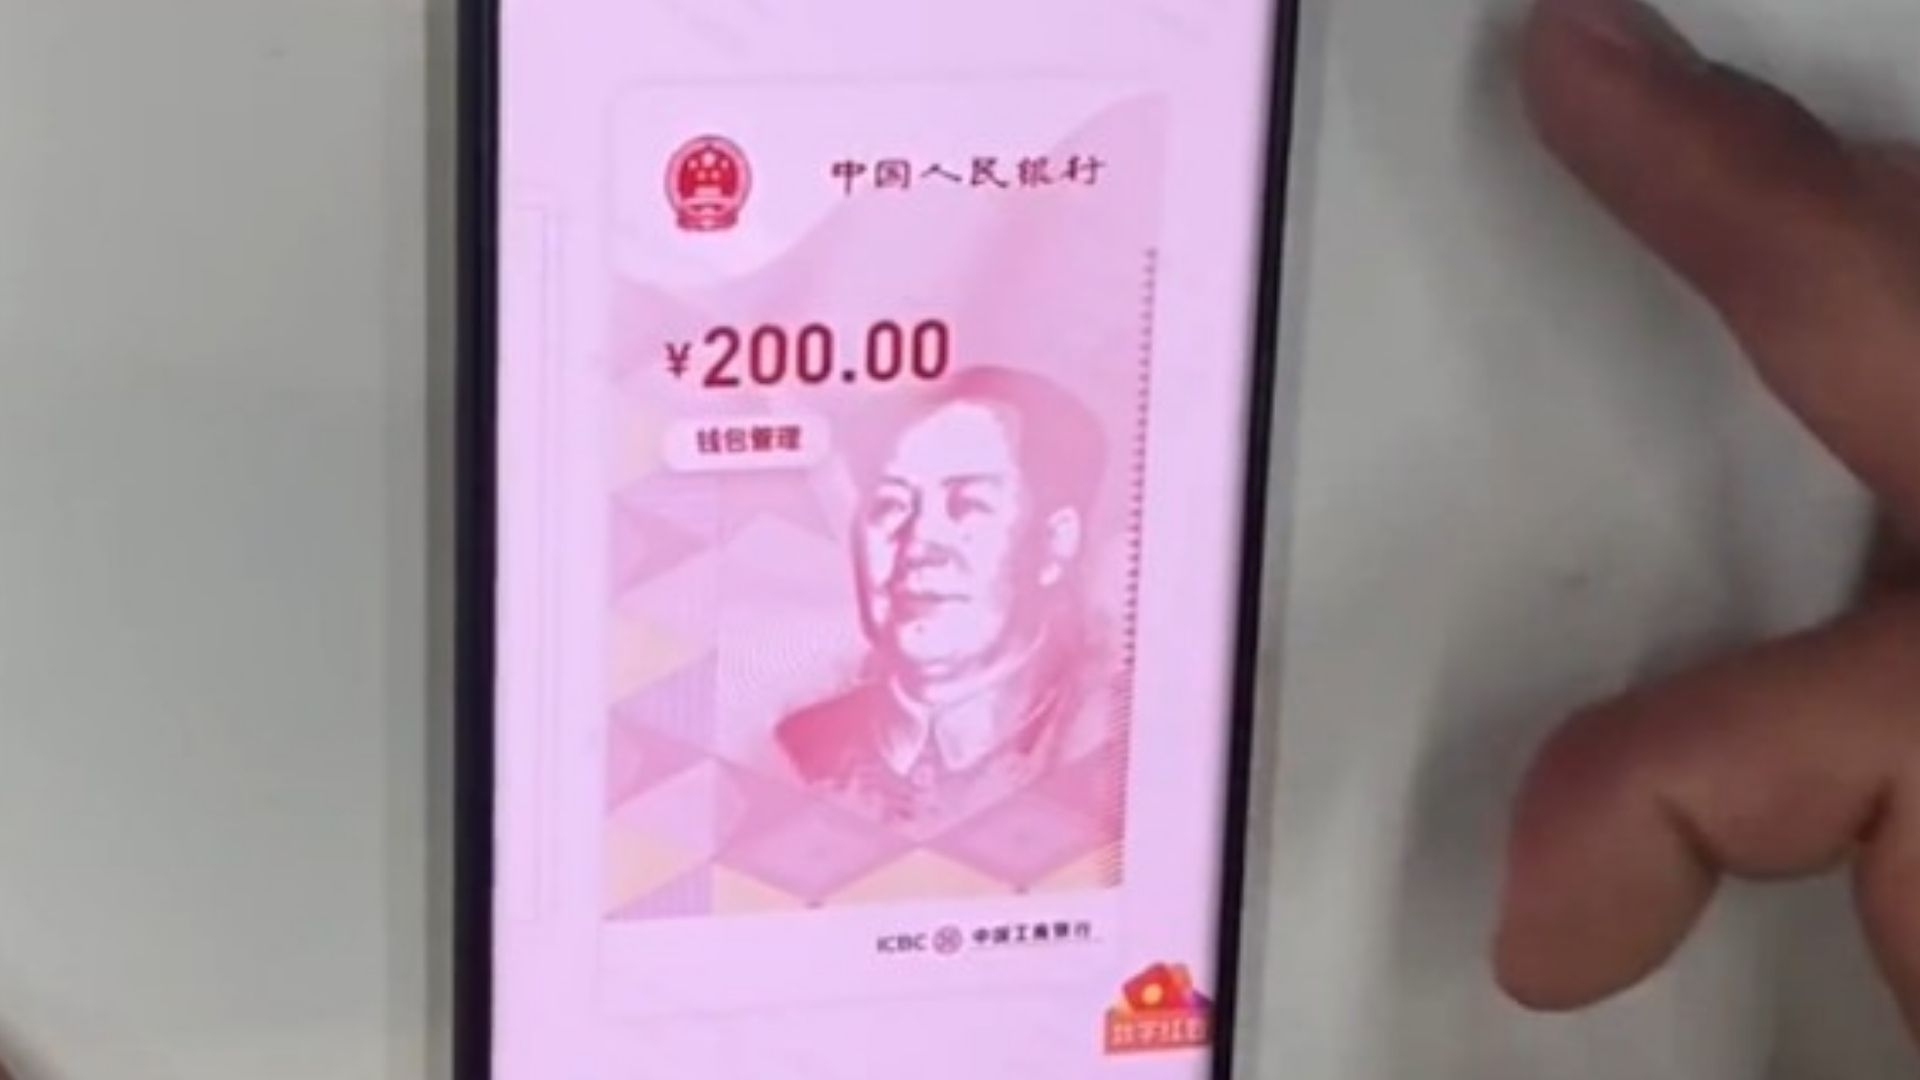 Yuan digital